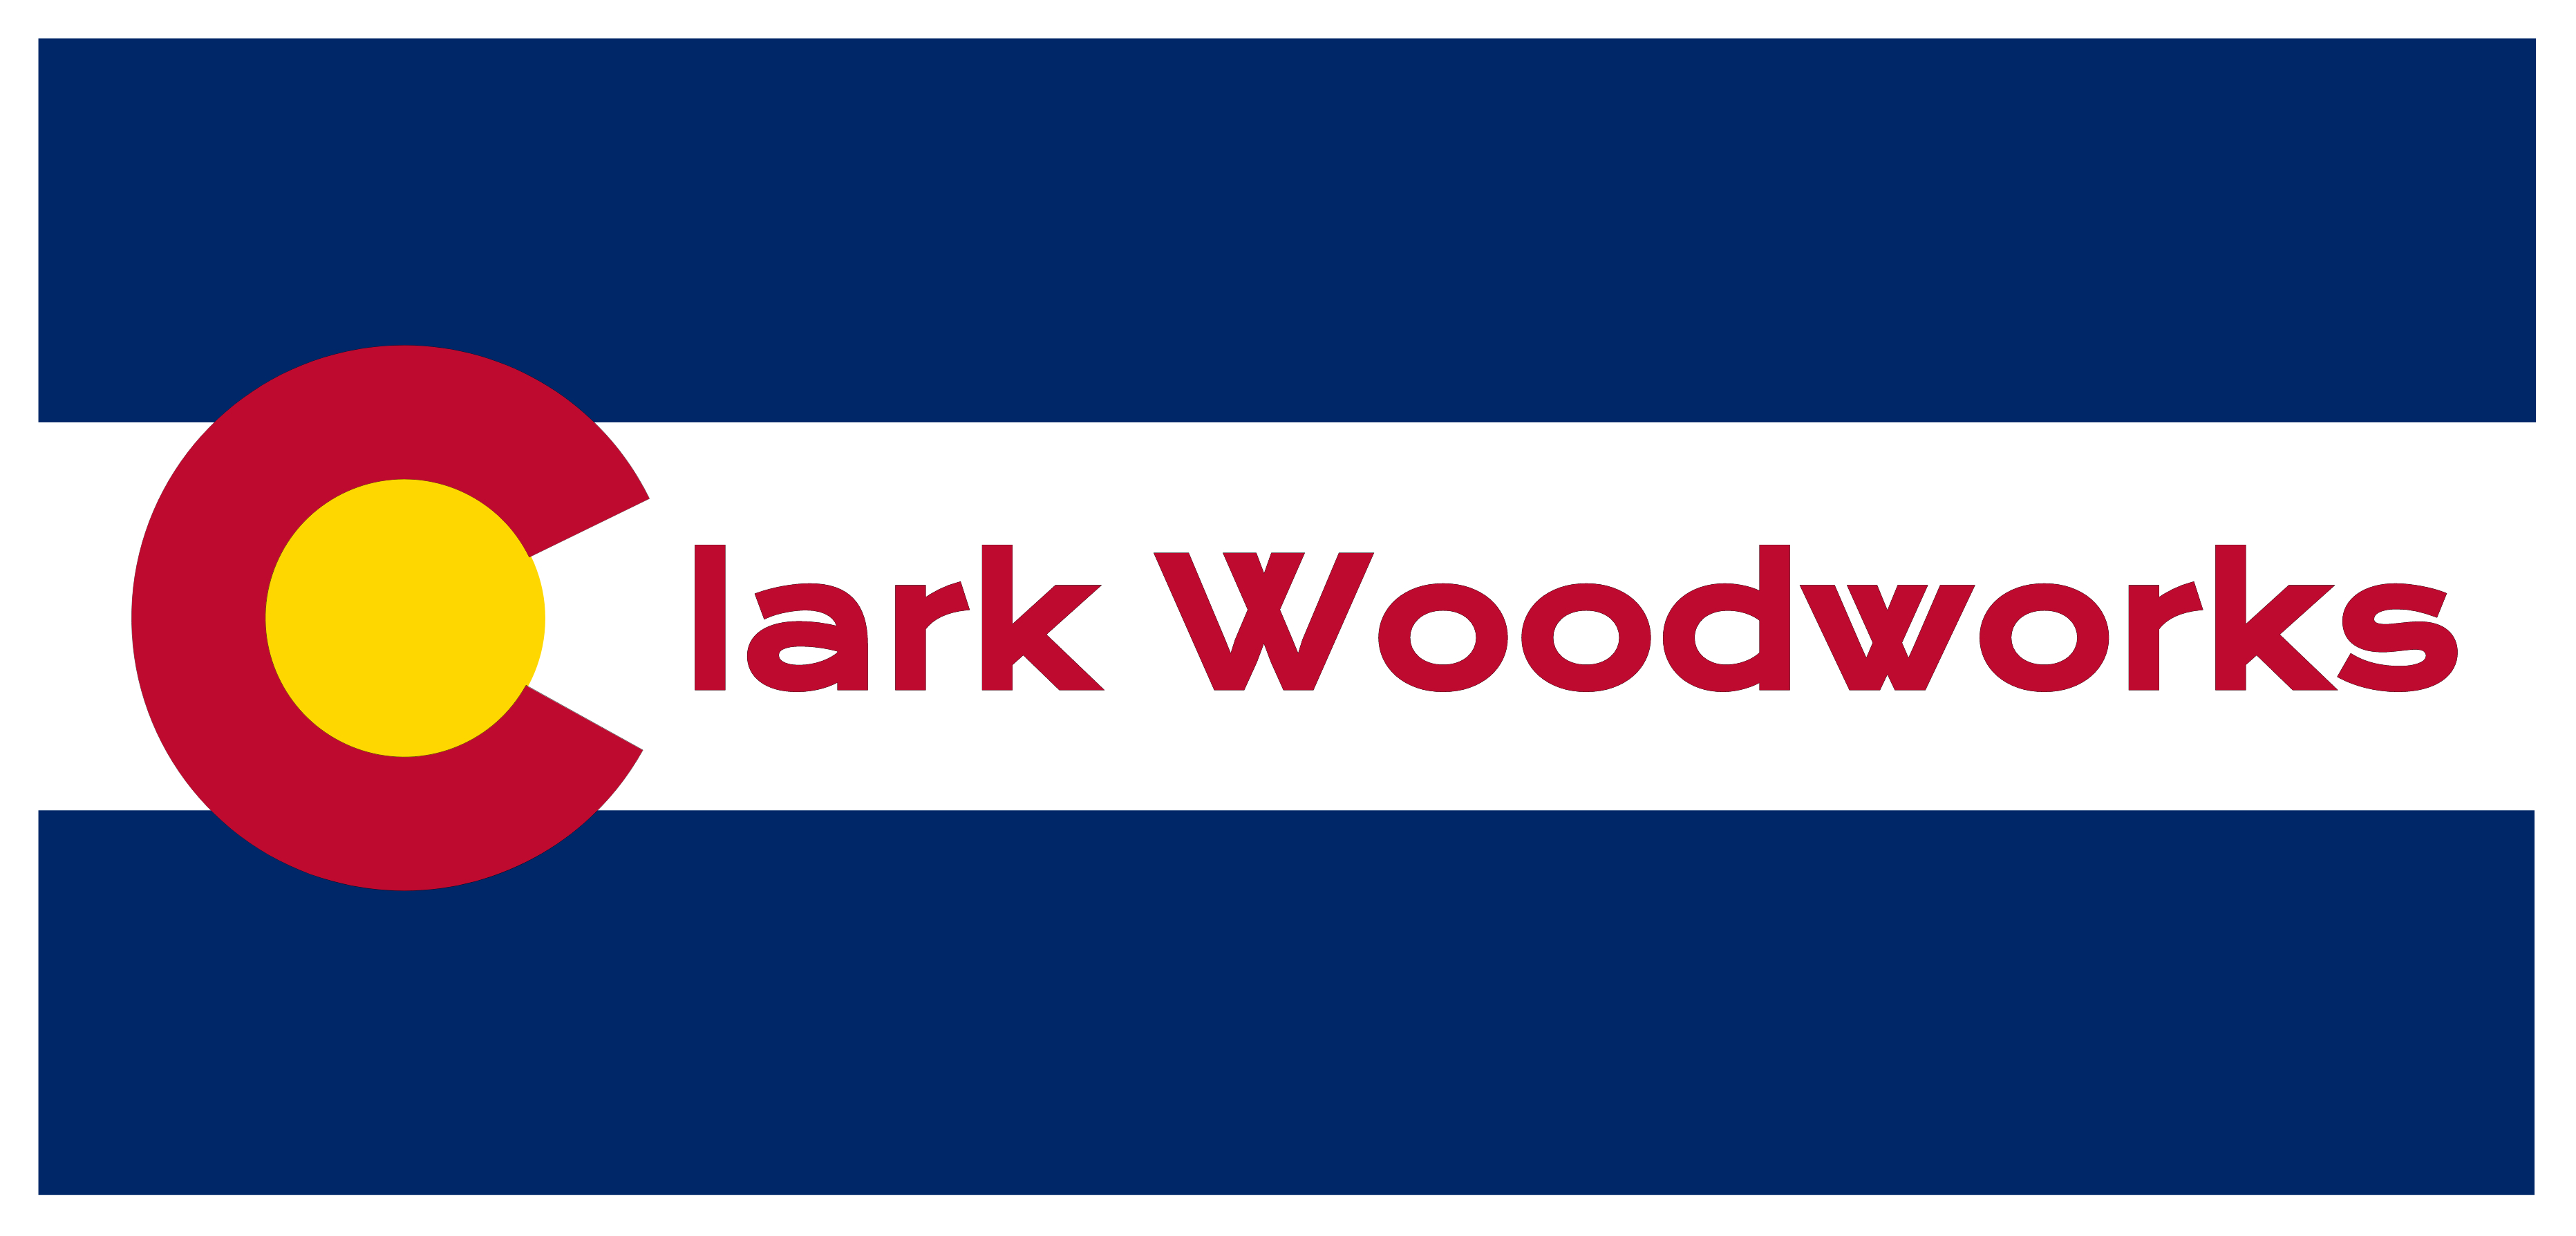 Clark Woodworks